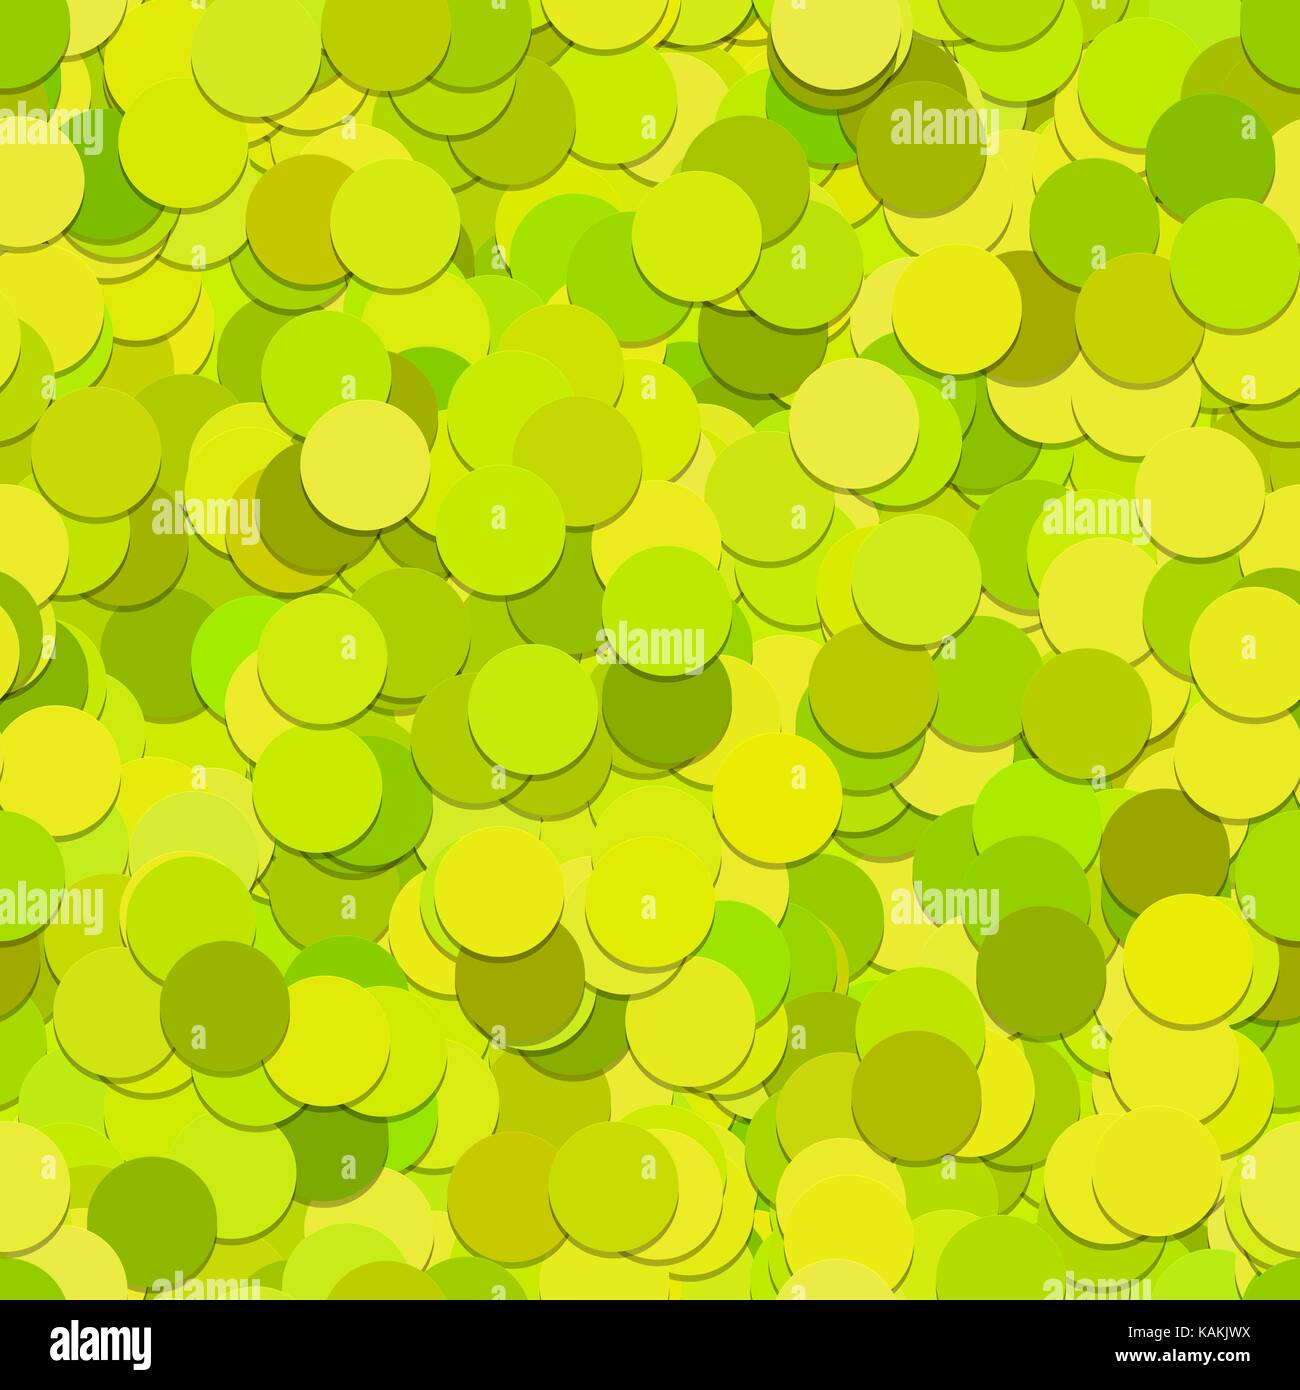 Nahtlose Dot Pattern - Vektorgrafik aus Kreisen in hellgrünen Farbtönen mit schatteneffekt Stock Vektor